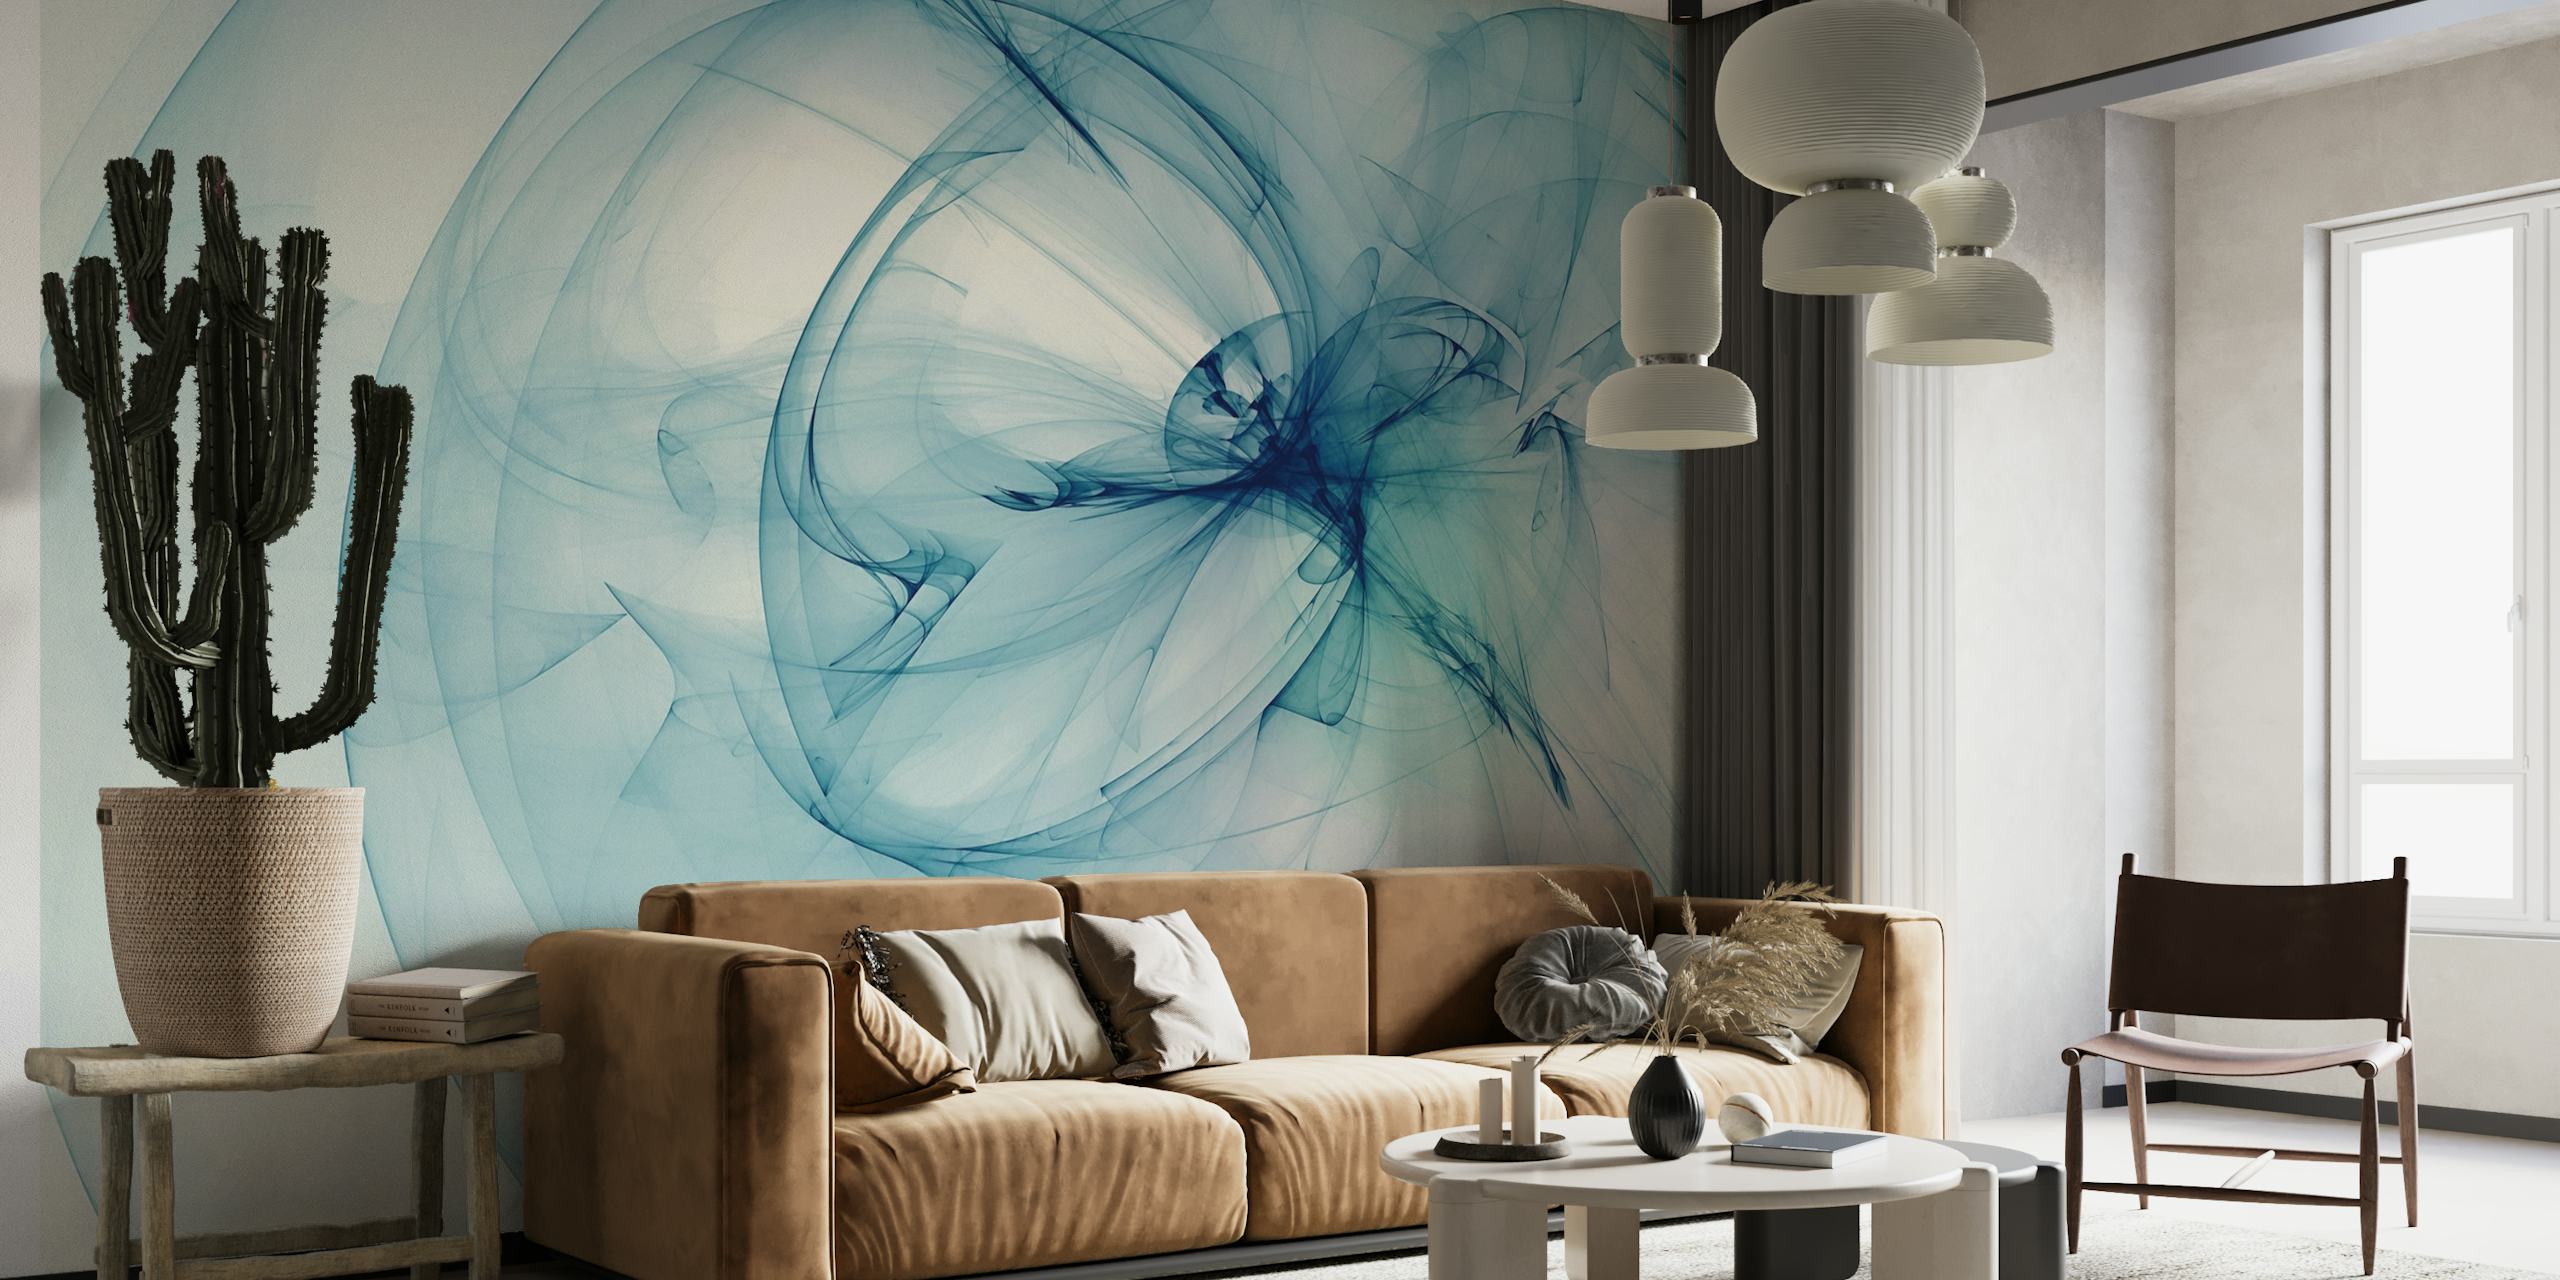 Conception murale abstraite en forme de fumée bleu clair transmettant sérénité et élégance